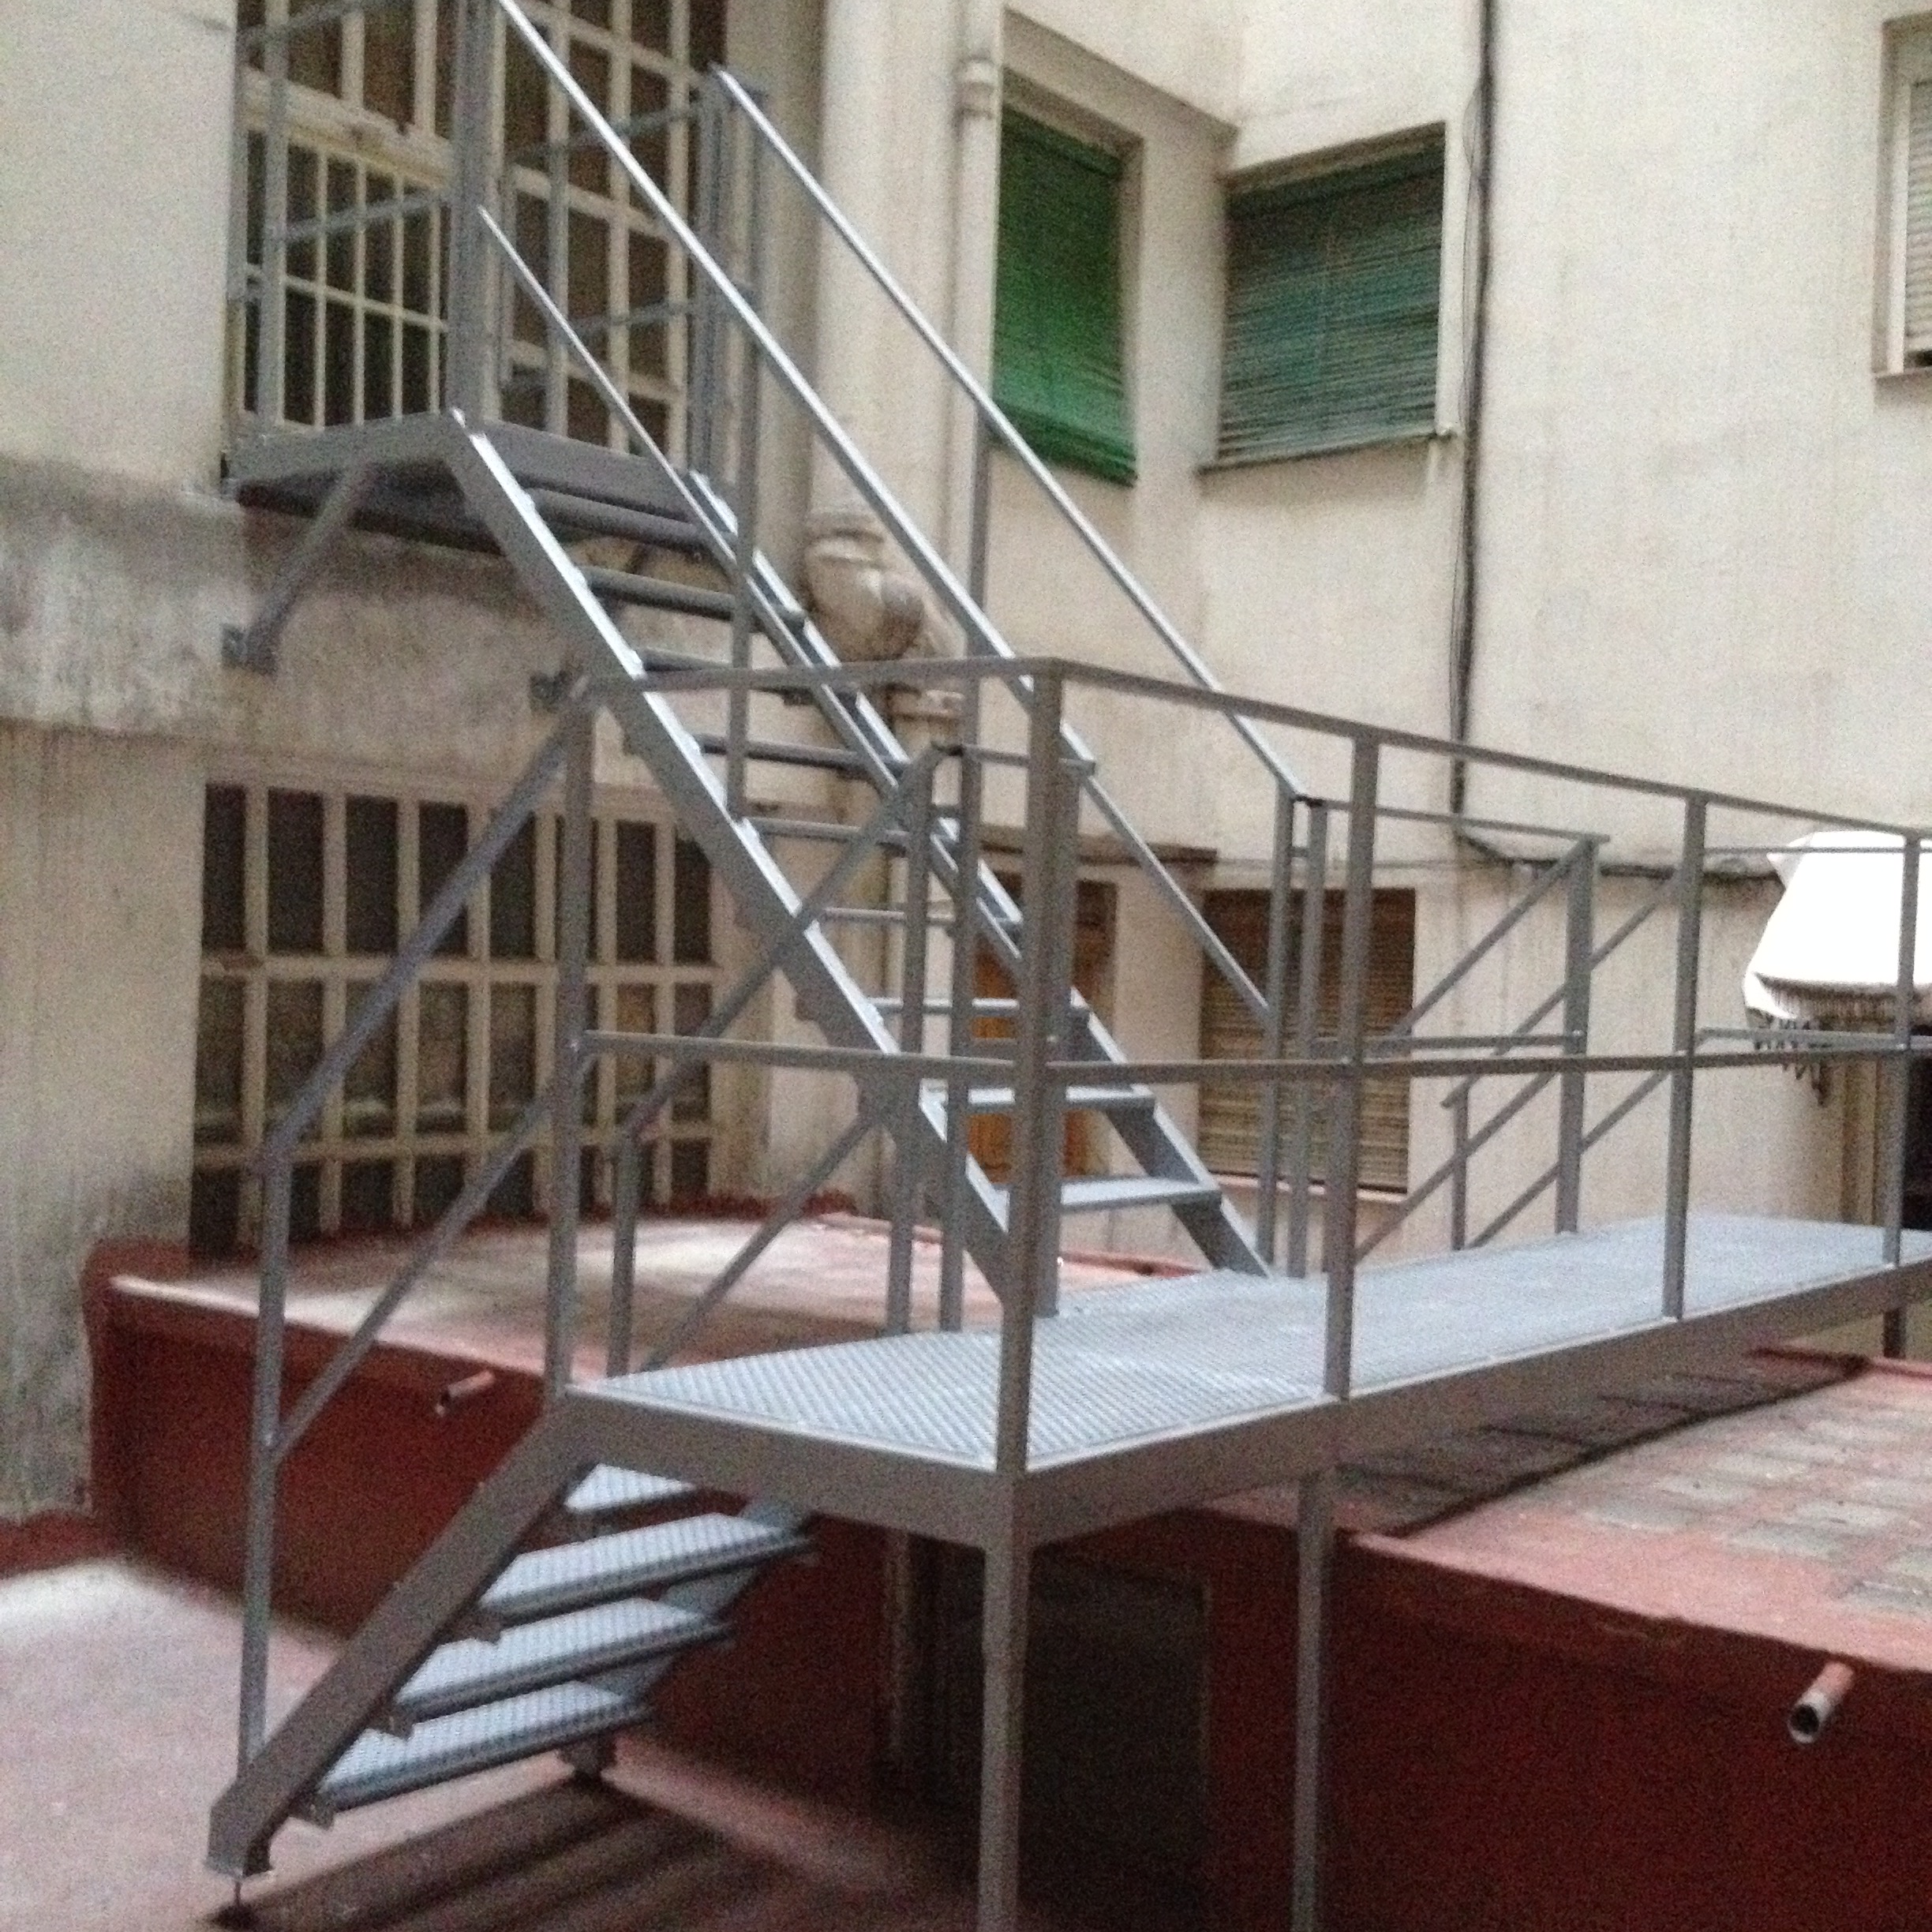 Escalera y plataforma de hierro en comunidad con pisas y suelo de plataforma de chapa antideslizante y barandilla de perfil tubular